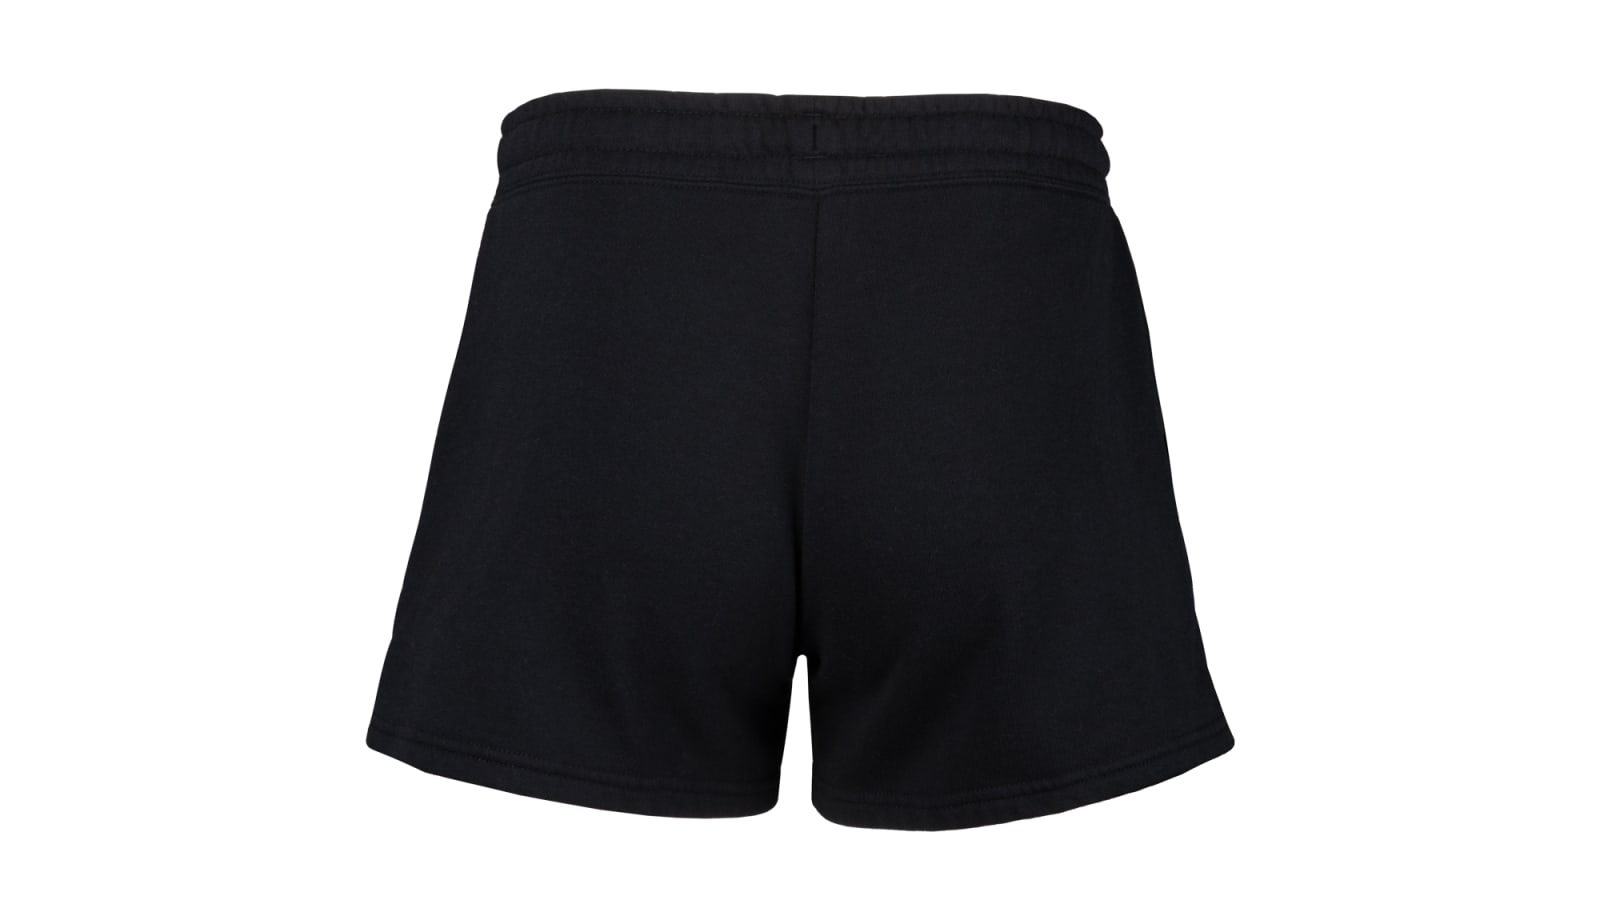 Supreme 2019 Jogger Shorts w/ Tags - Black, 12.5 Rise Shorts, Clothing -  WSPME69158